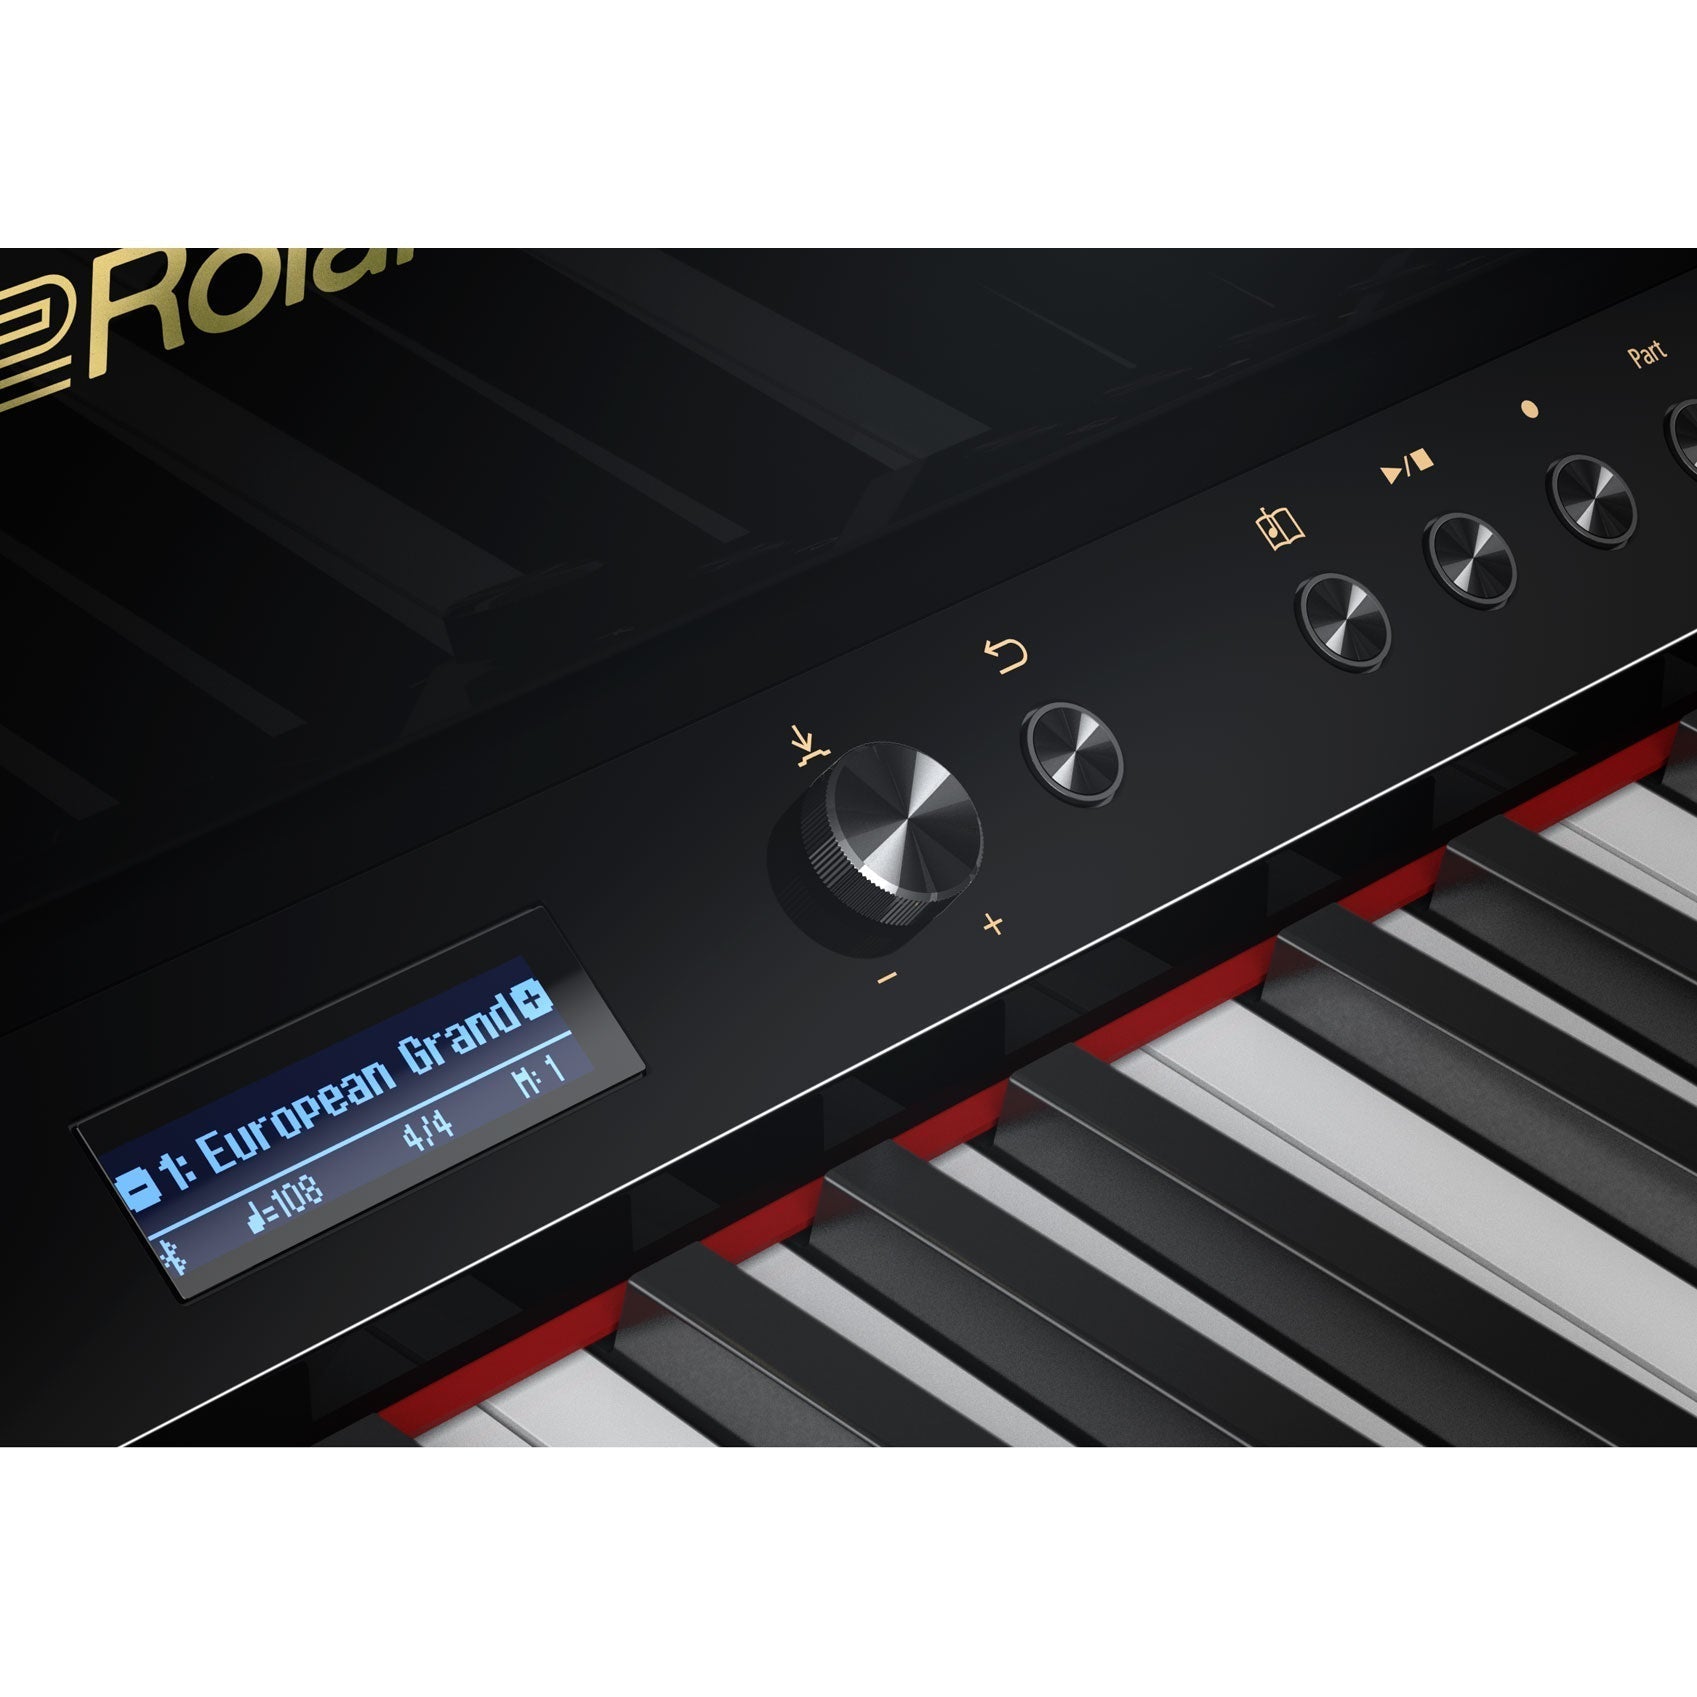 Đàn Piano Điện Roland LX-708 - Qua Sử Dụng